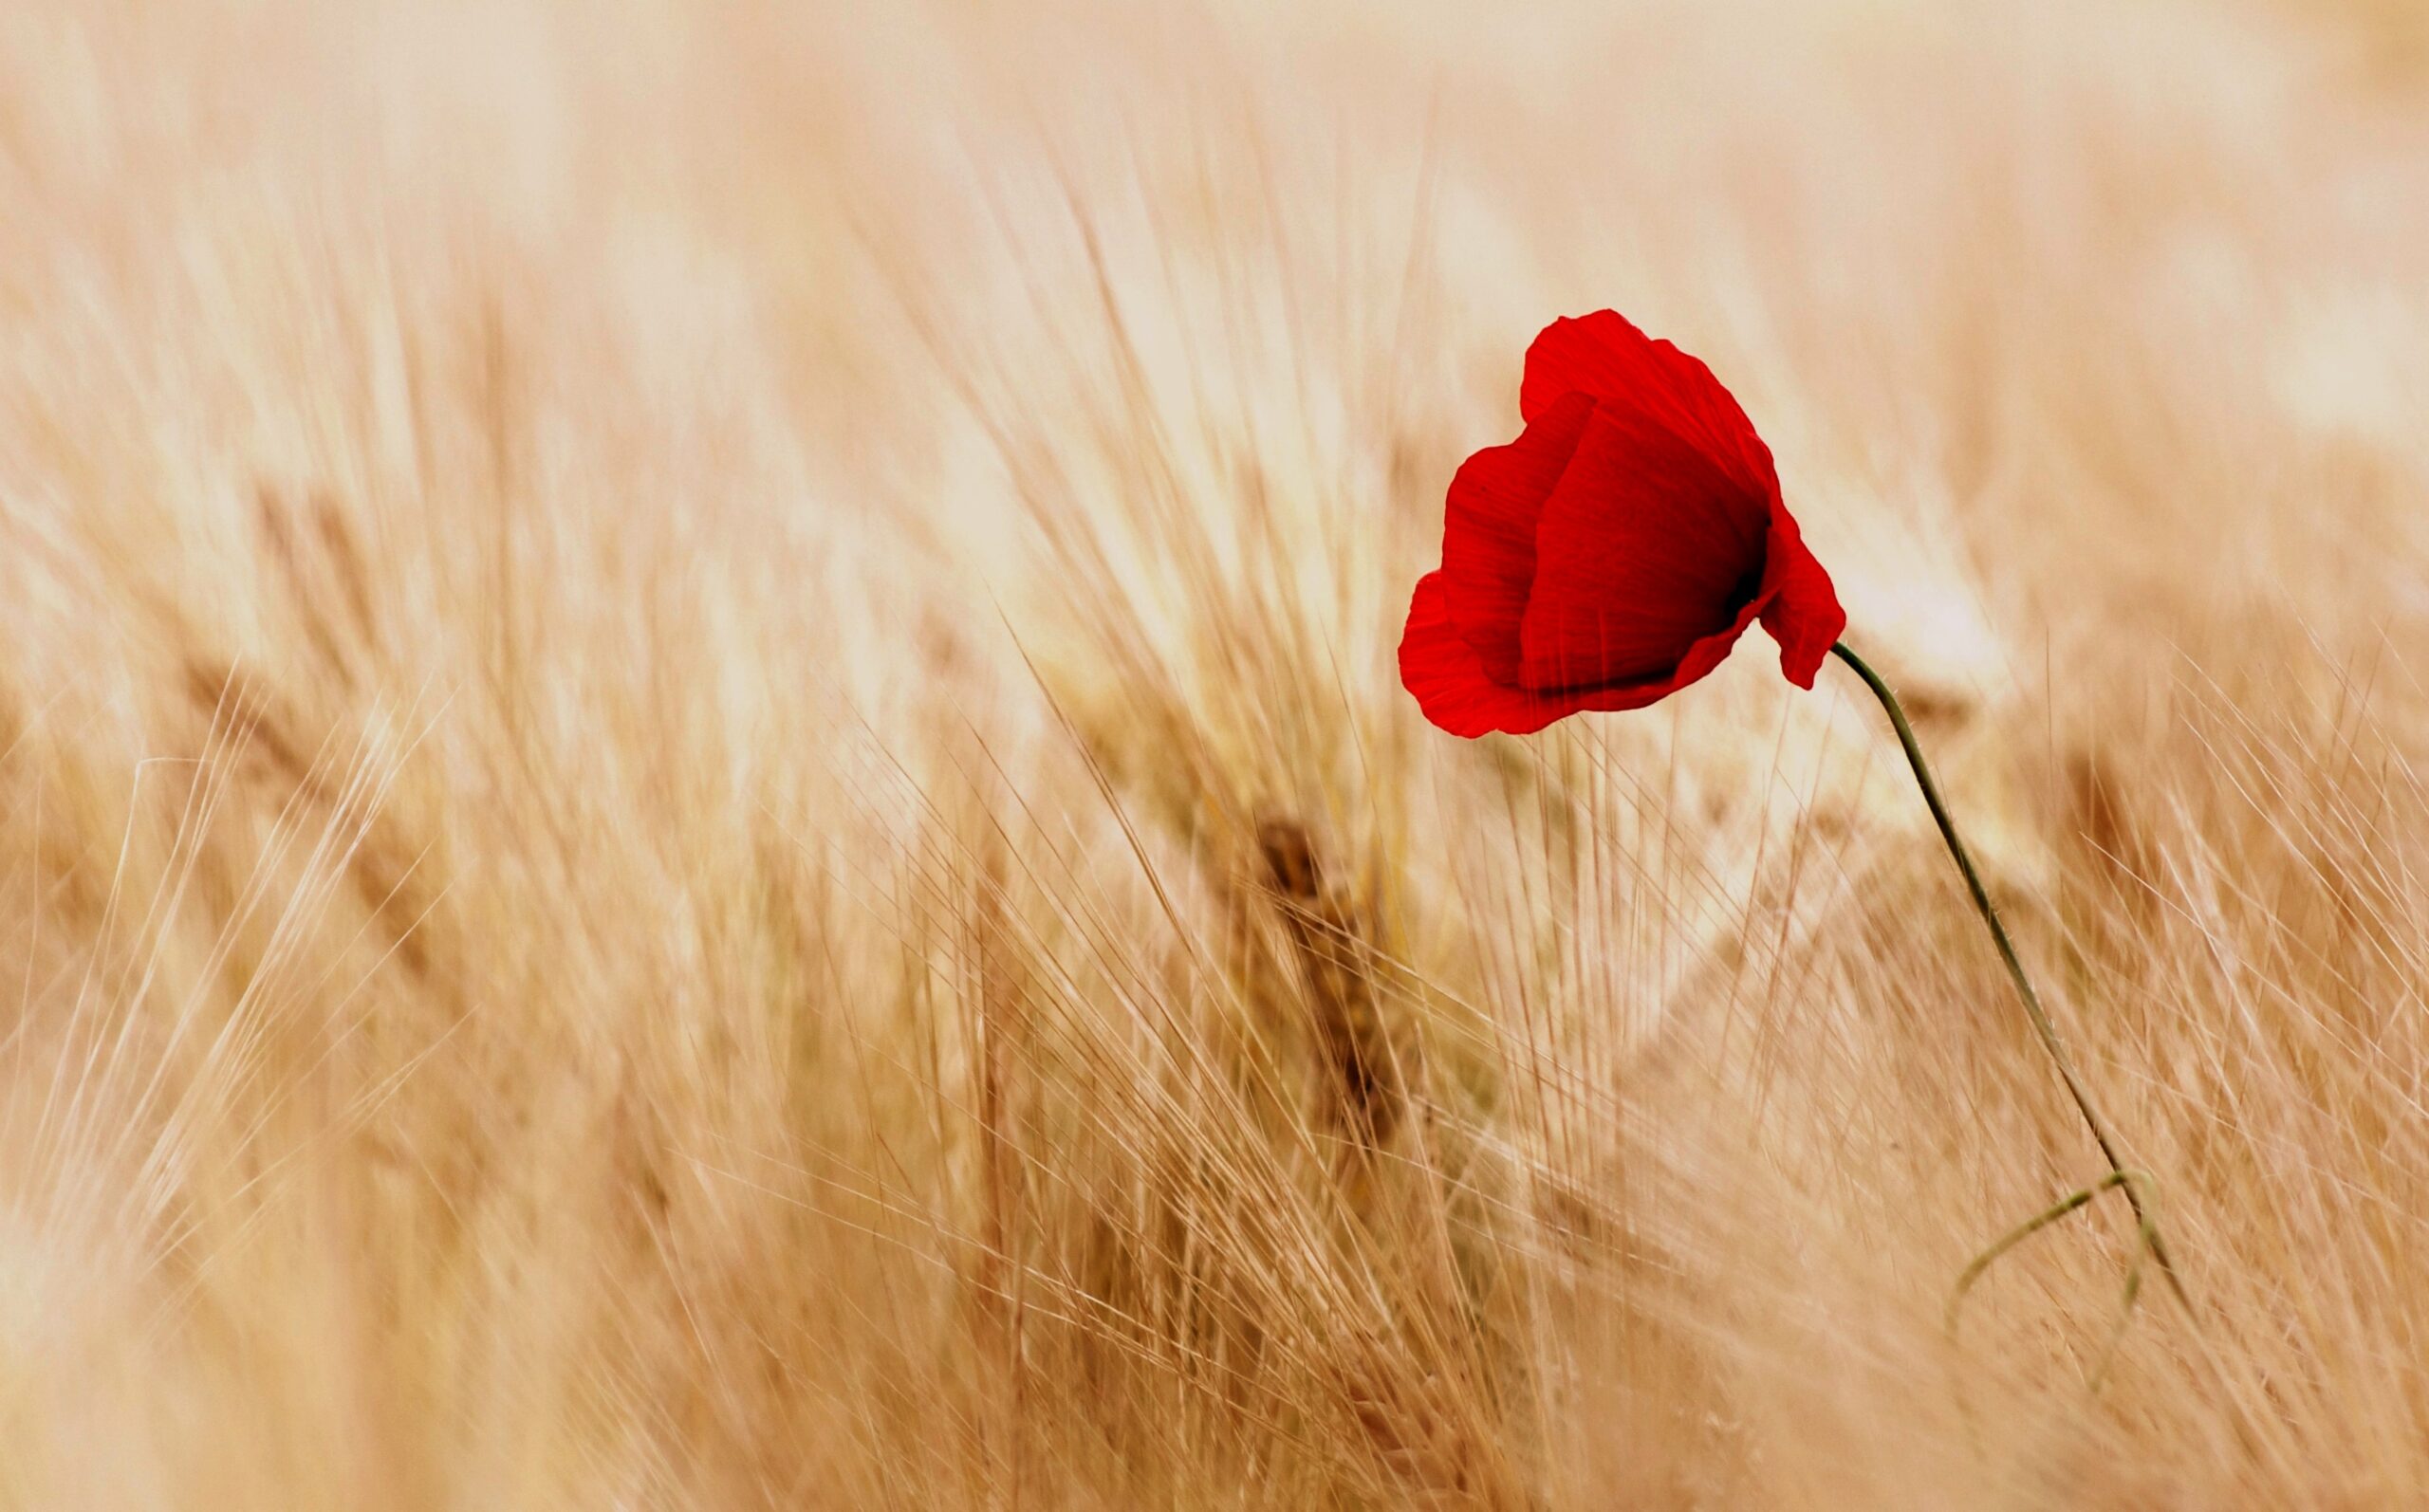 A single red poppy in a field of wheat